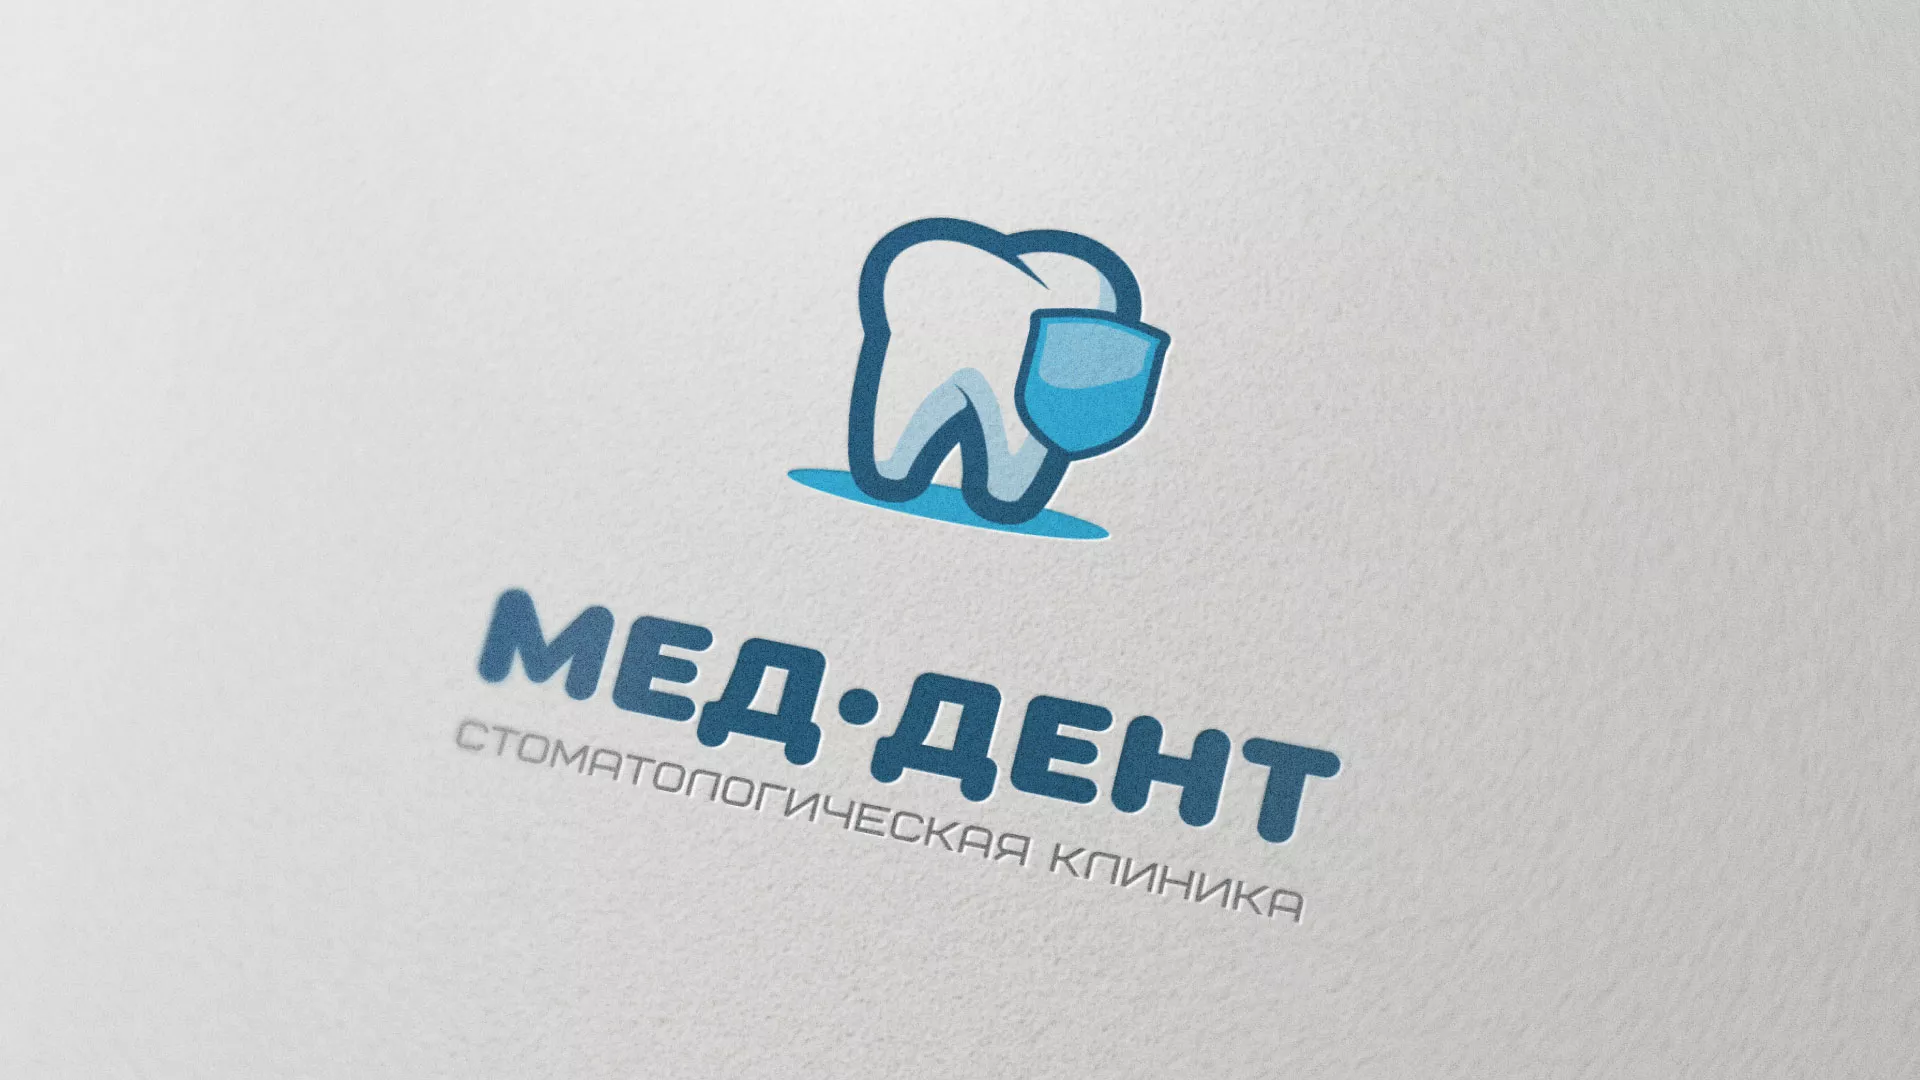 Разработка логотипа стоматологической клиники «МЕД-ДЕНТ» в Усинске